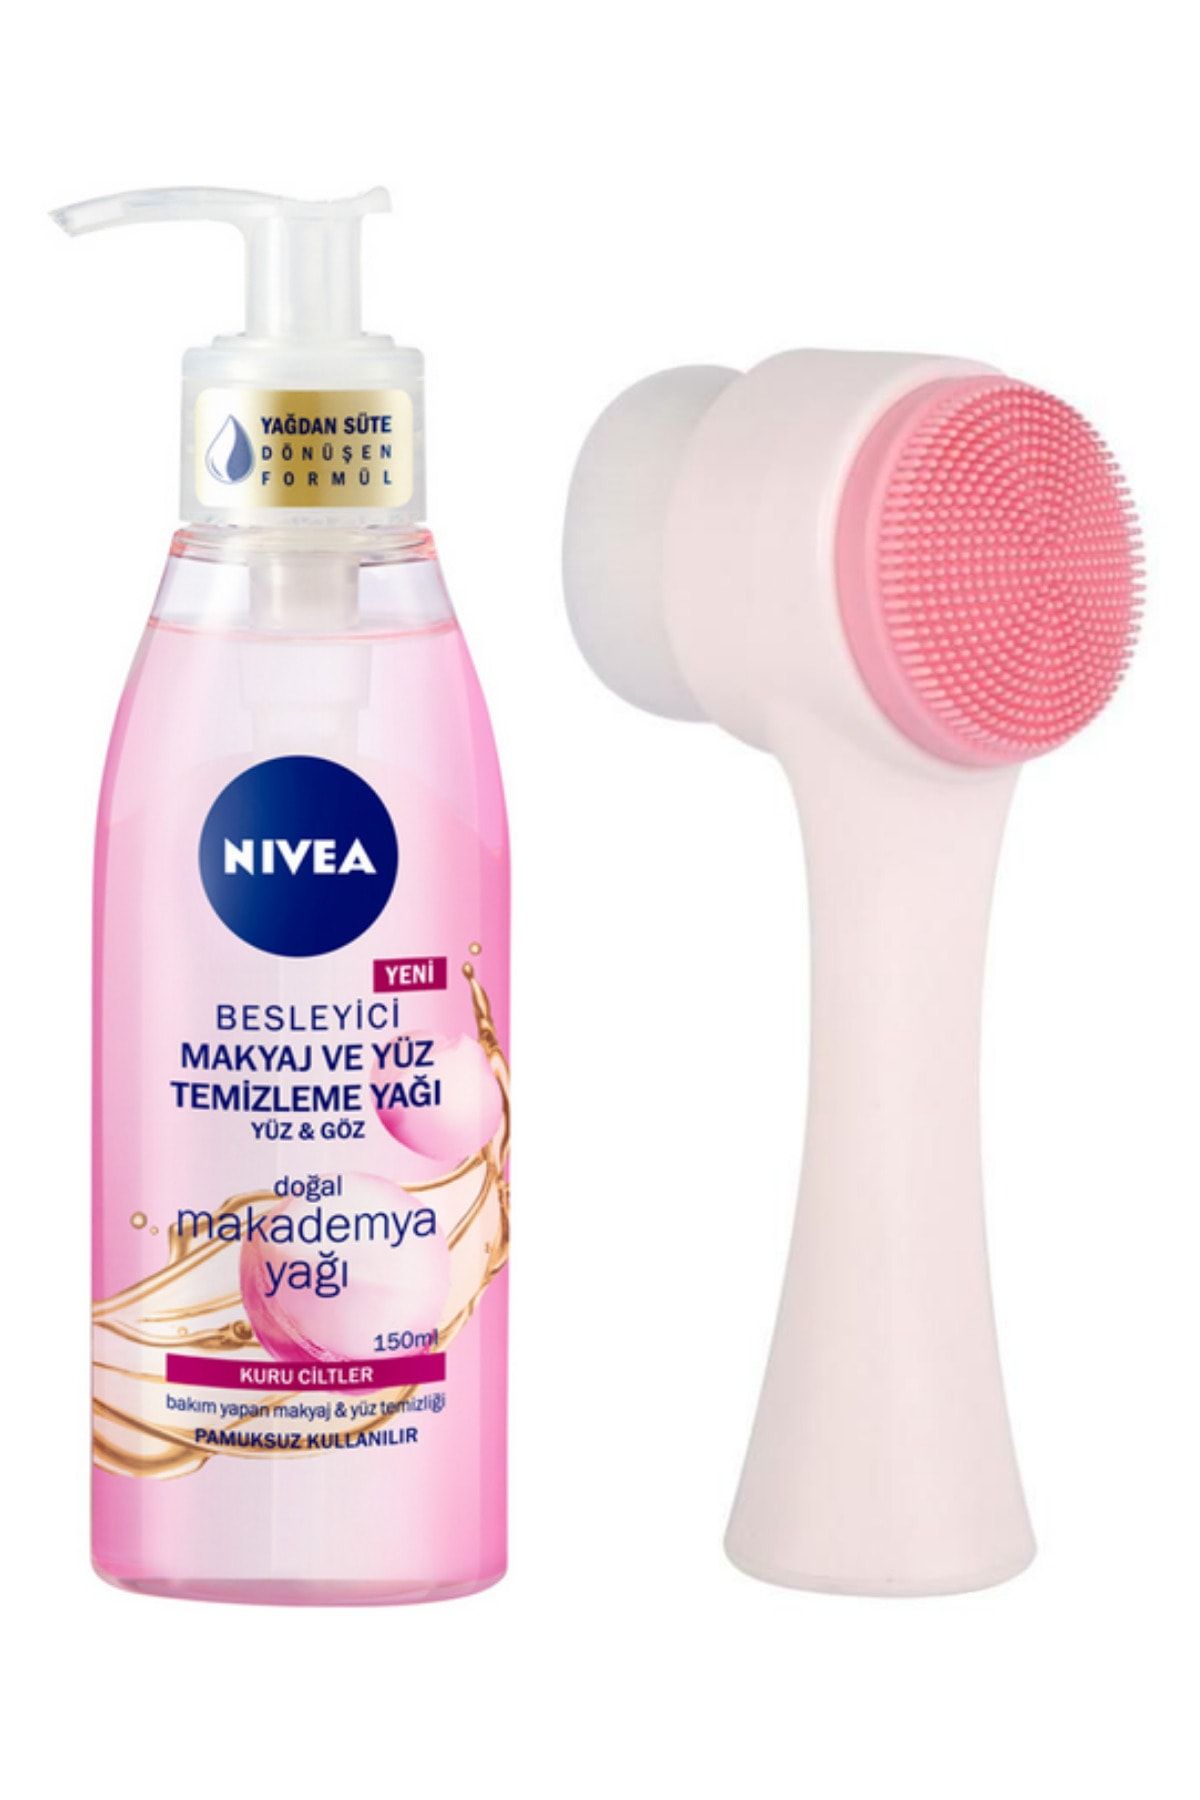 NIVEA Makyaj Ve Yüz Temizleme Yağı Kuru Ciltler 150ml Ve Fluweel Yüz Temizleme Fırçası